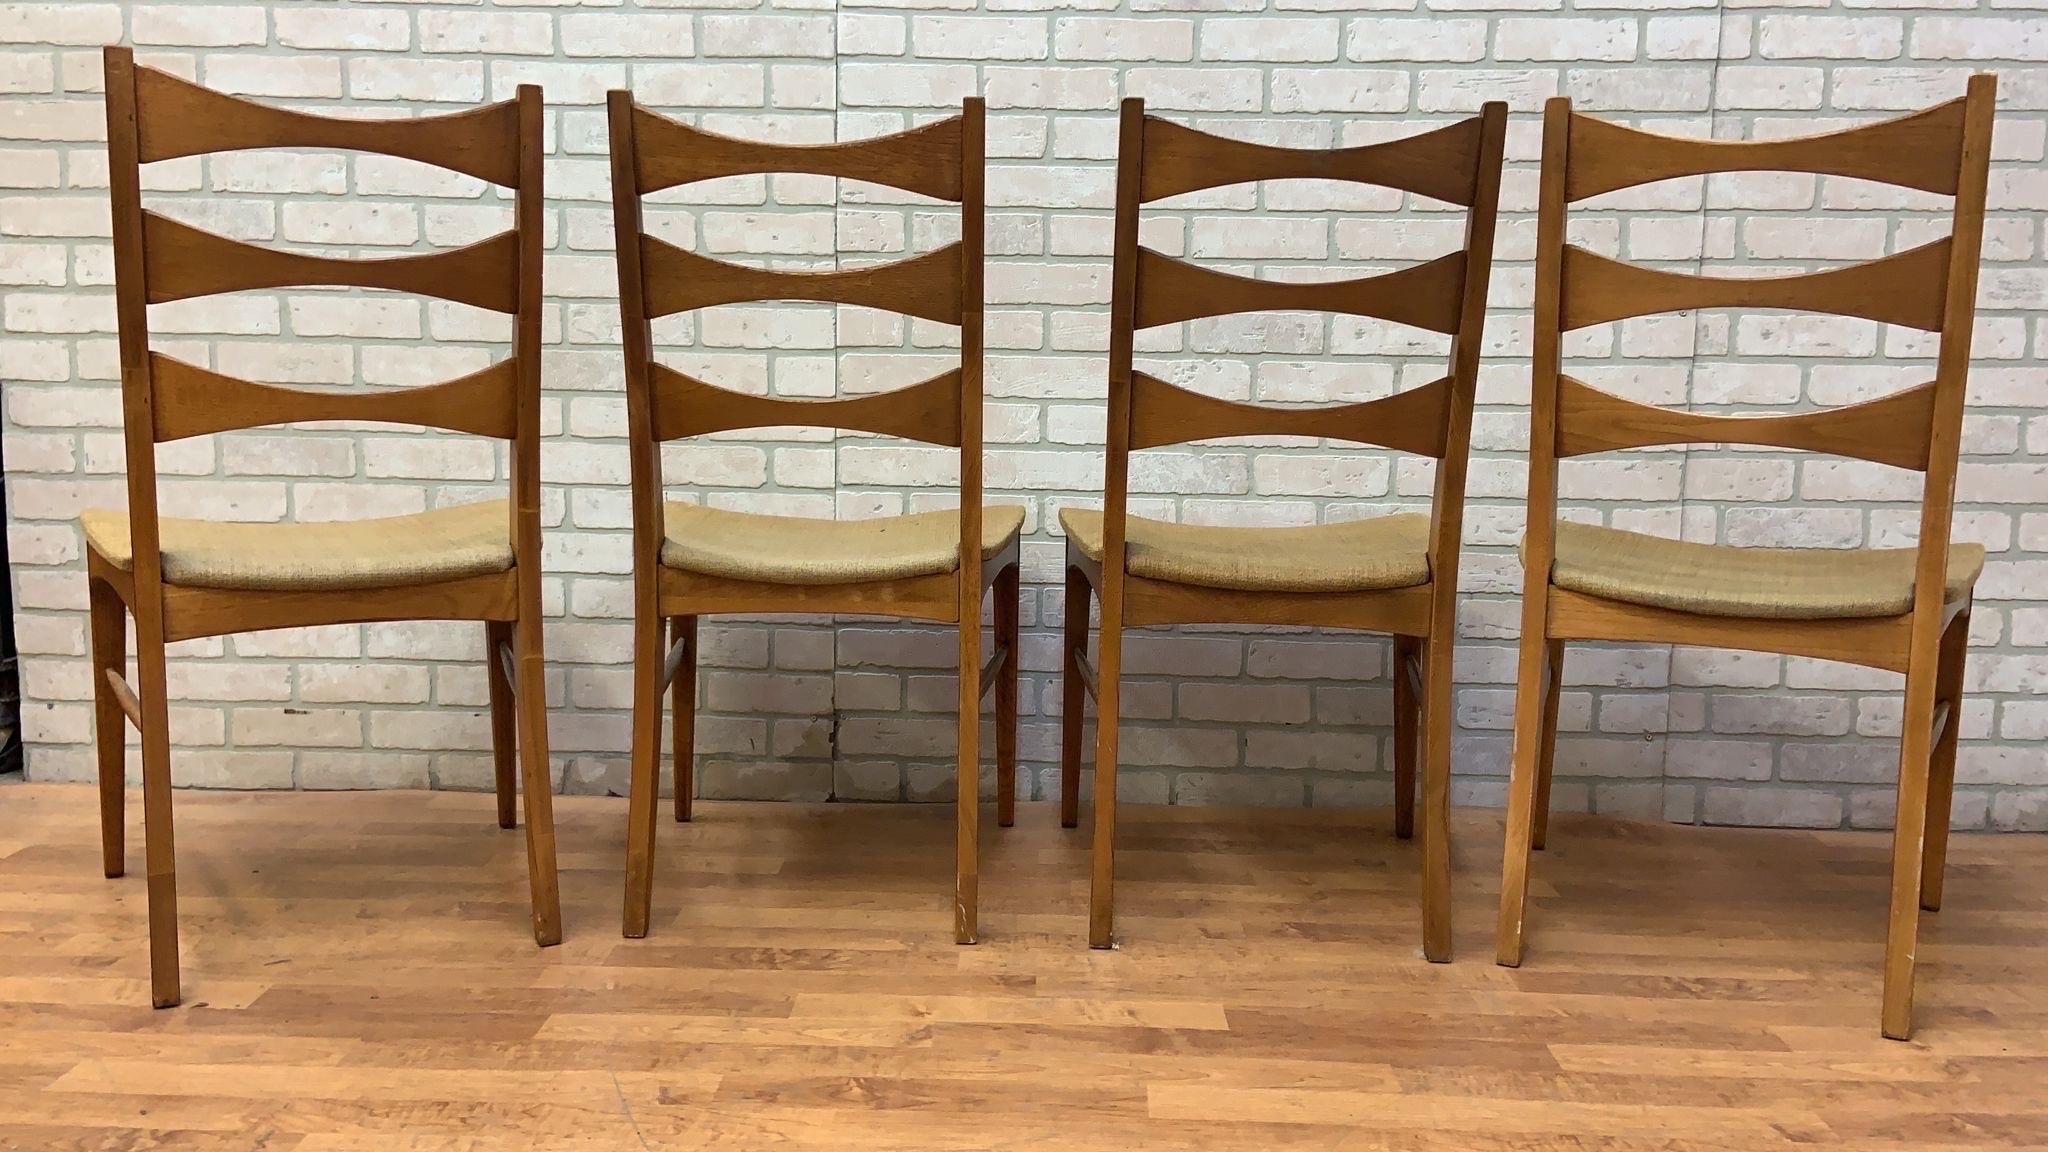 Mid-Century Modern Lane Rhythm Beistellstühle aus Nussbaumholz mit Leiterrückenlehne - 4er-Set

Zeitlose Stühle aus Nussbaumholz von Lane's Company, die jeden Essbereich aufwerten werden. Diese Ladder Back Side Chairs aus der Rhythm Collection'S für